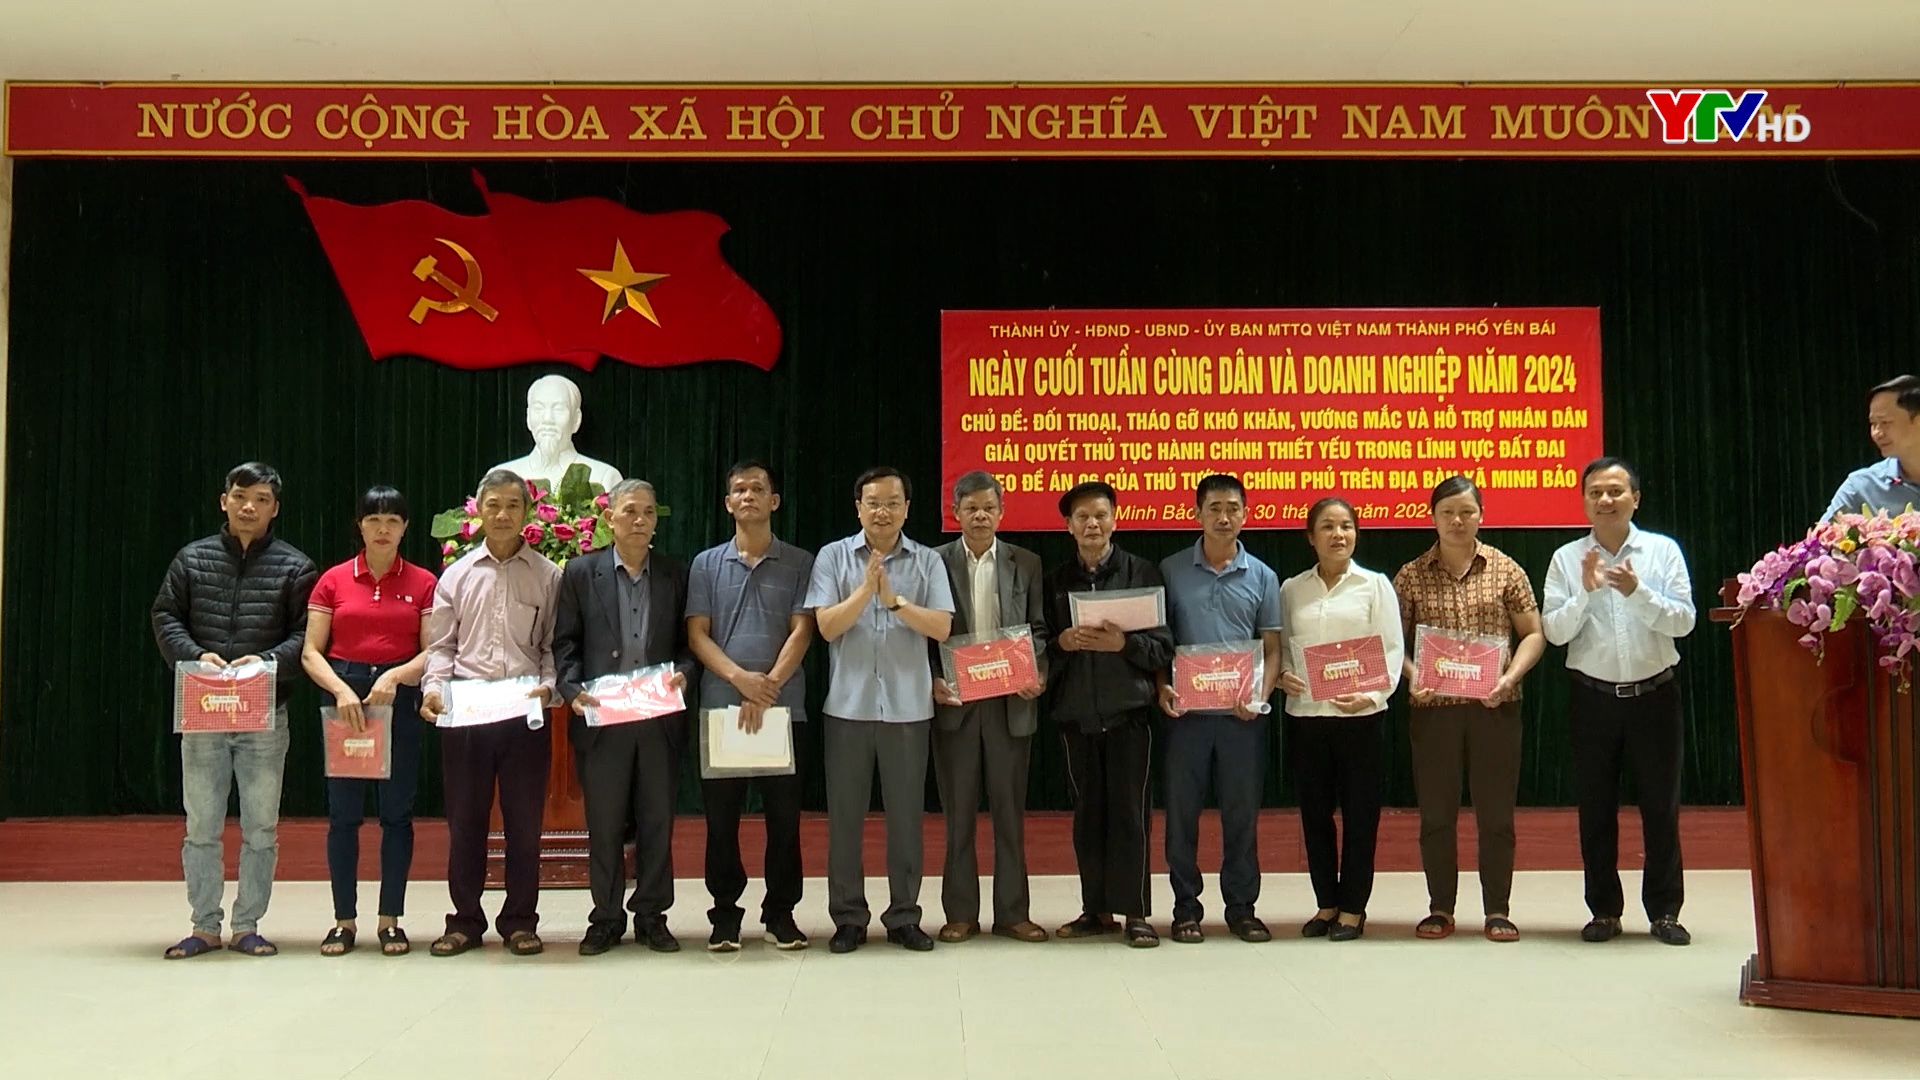 Thành phố Yên Bái: Hỗ trợ nhân dân giải quyết thủ tục hành chính thiết yếu trong lĩnh vực đất đai trên địa bàn xã Minh Bảo